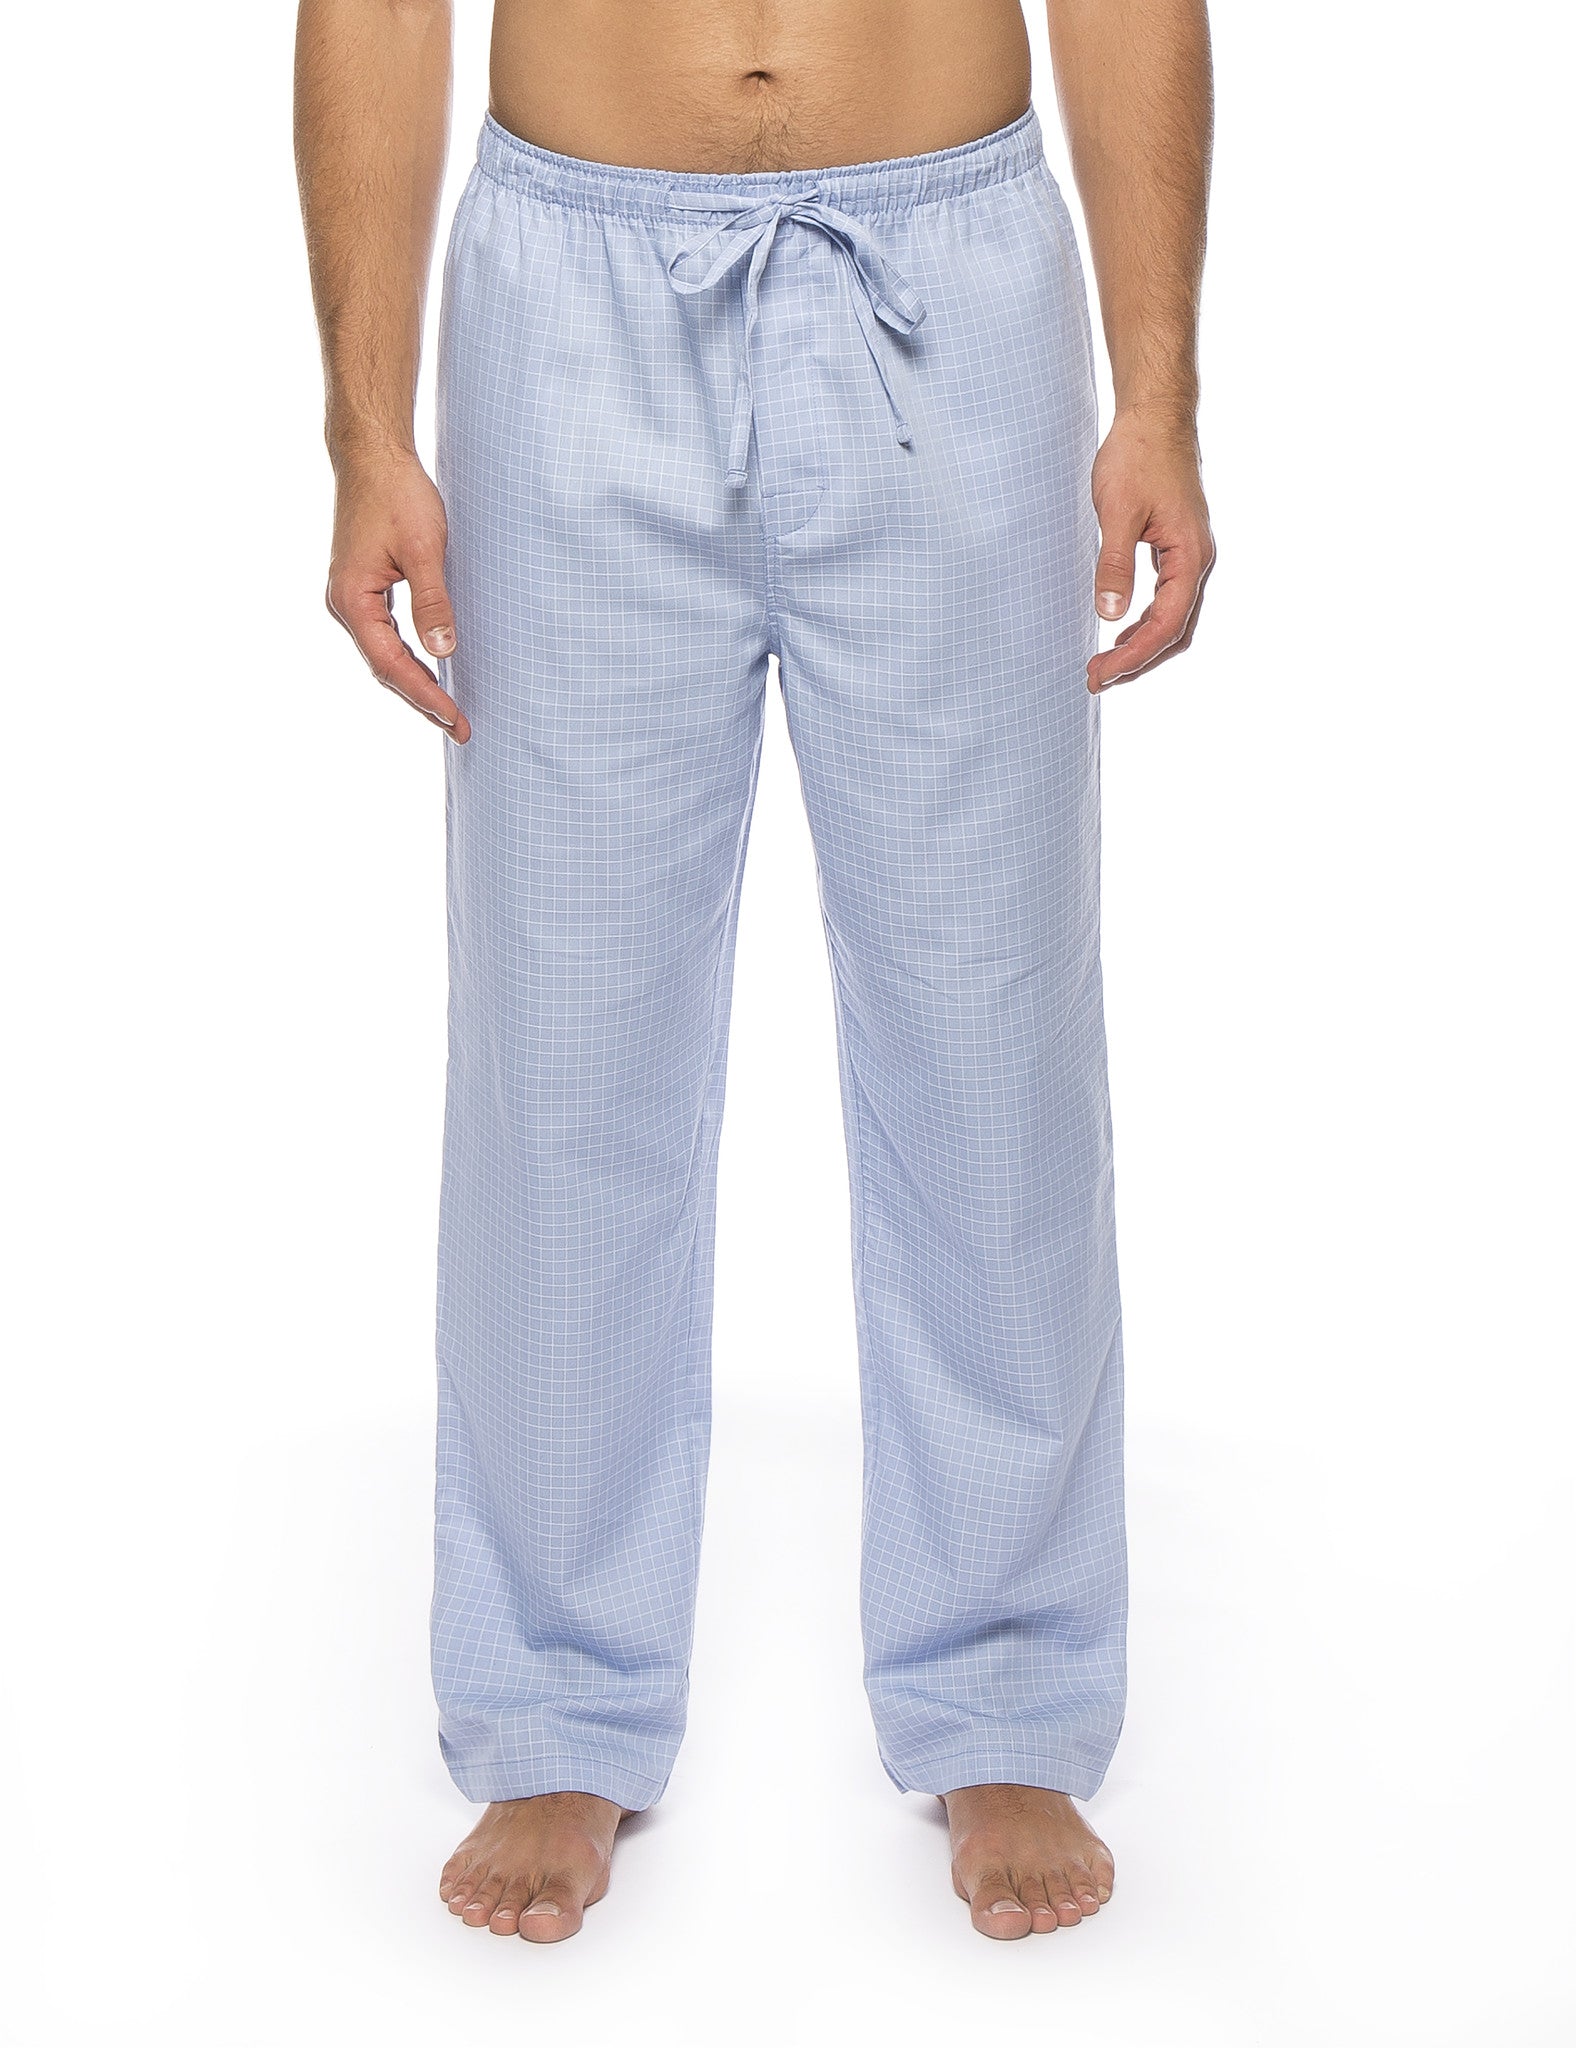 Men's 100% Woven Cotton Lounge Pants